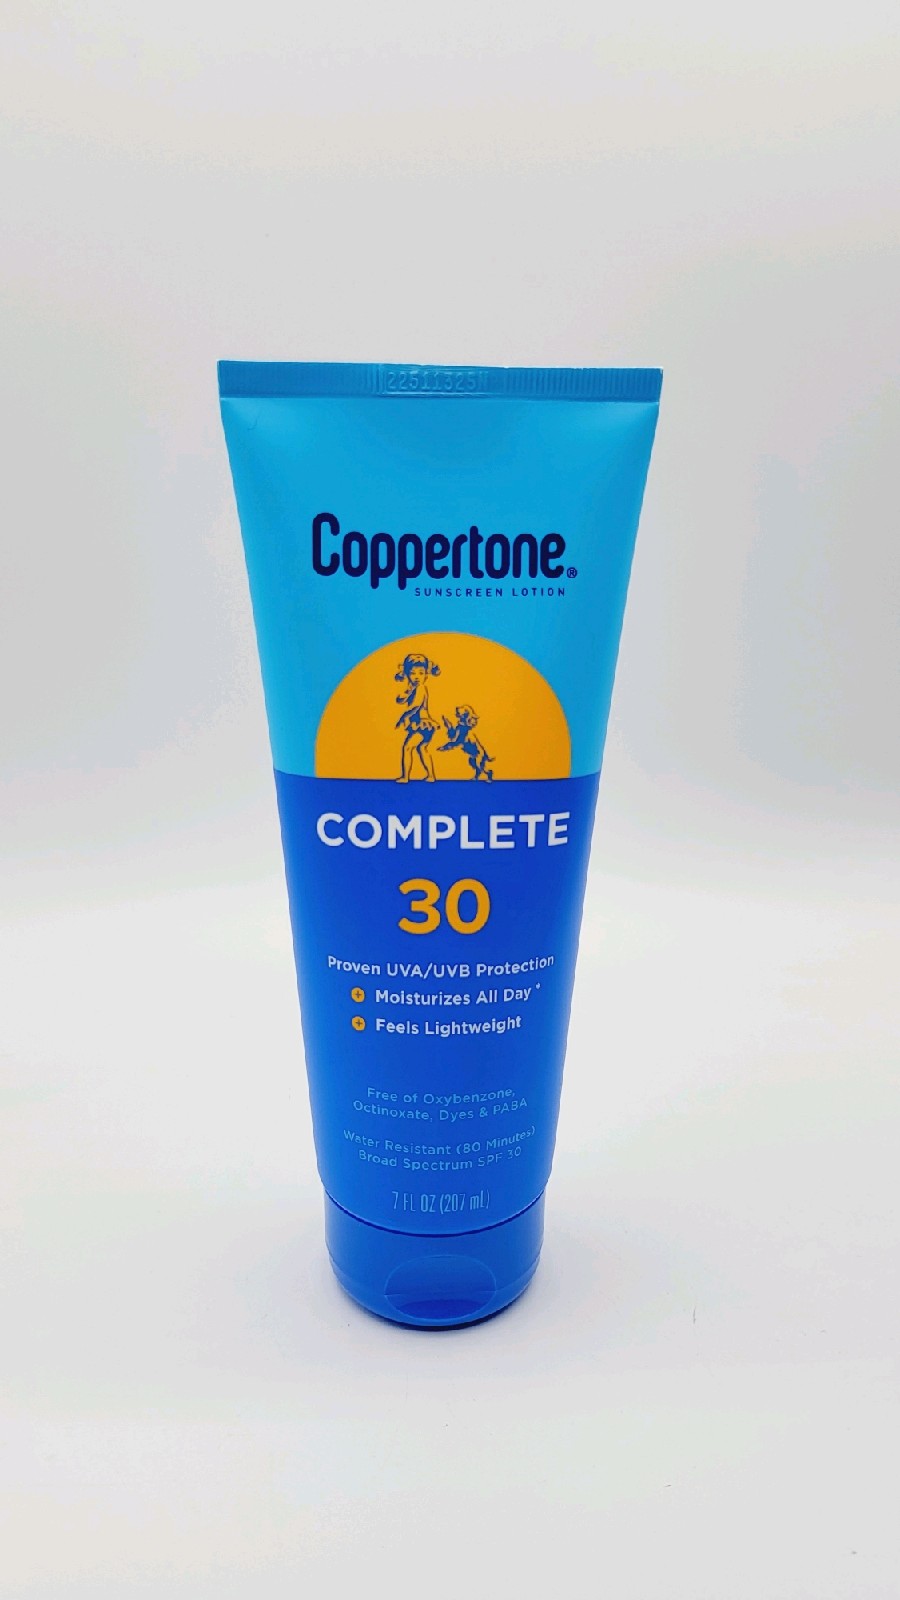 Coppertone Complete SPF 30 7oz